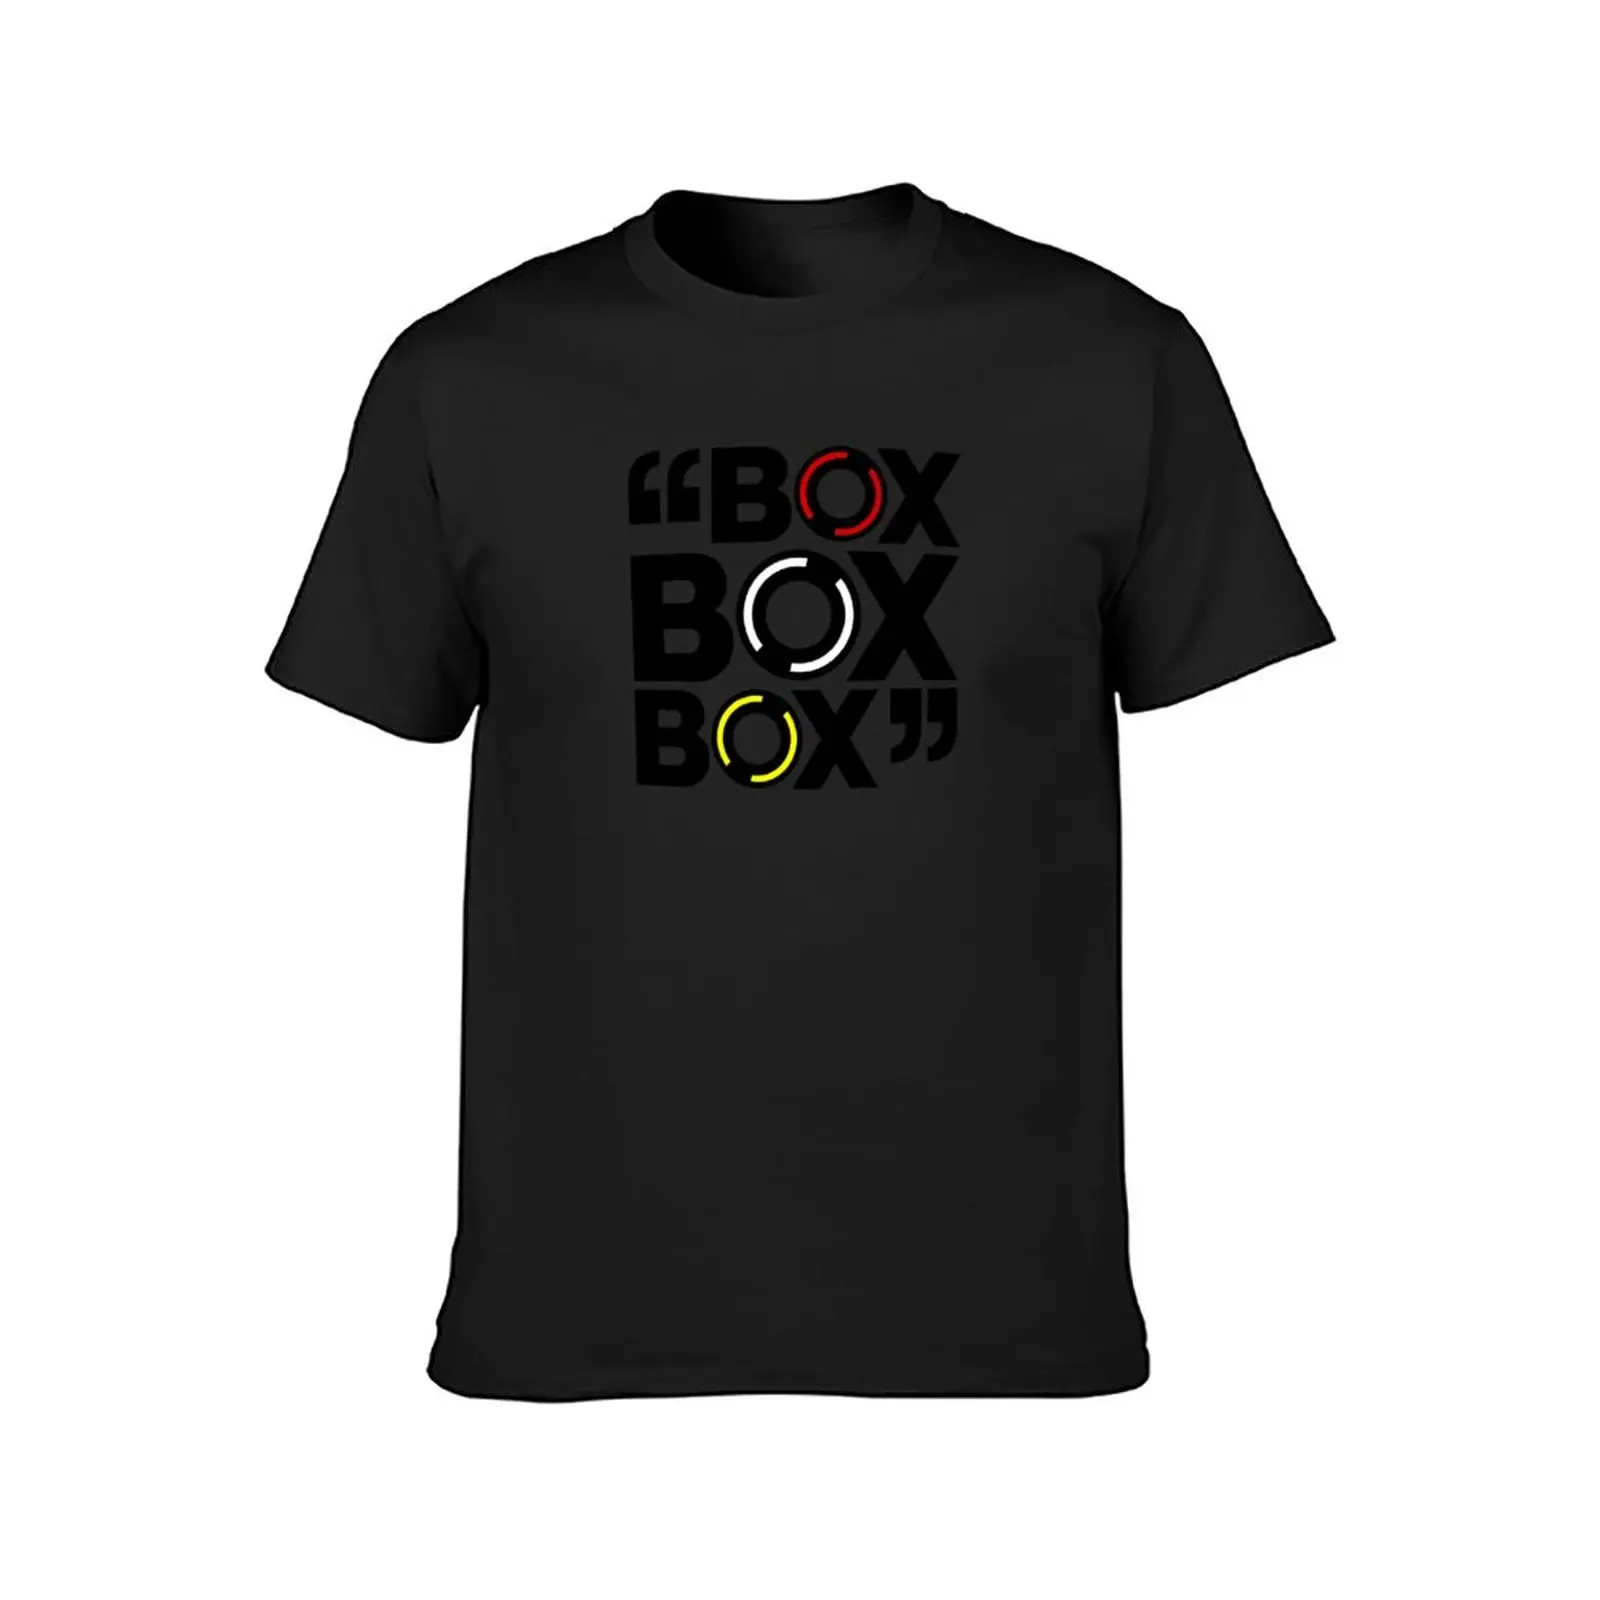 Тениска С дизайн шинного компаунда Формула 1, летни потници, тениска за момче, мъжка тениска с изображение - 1